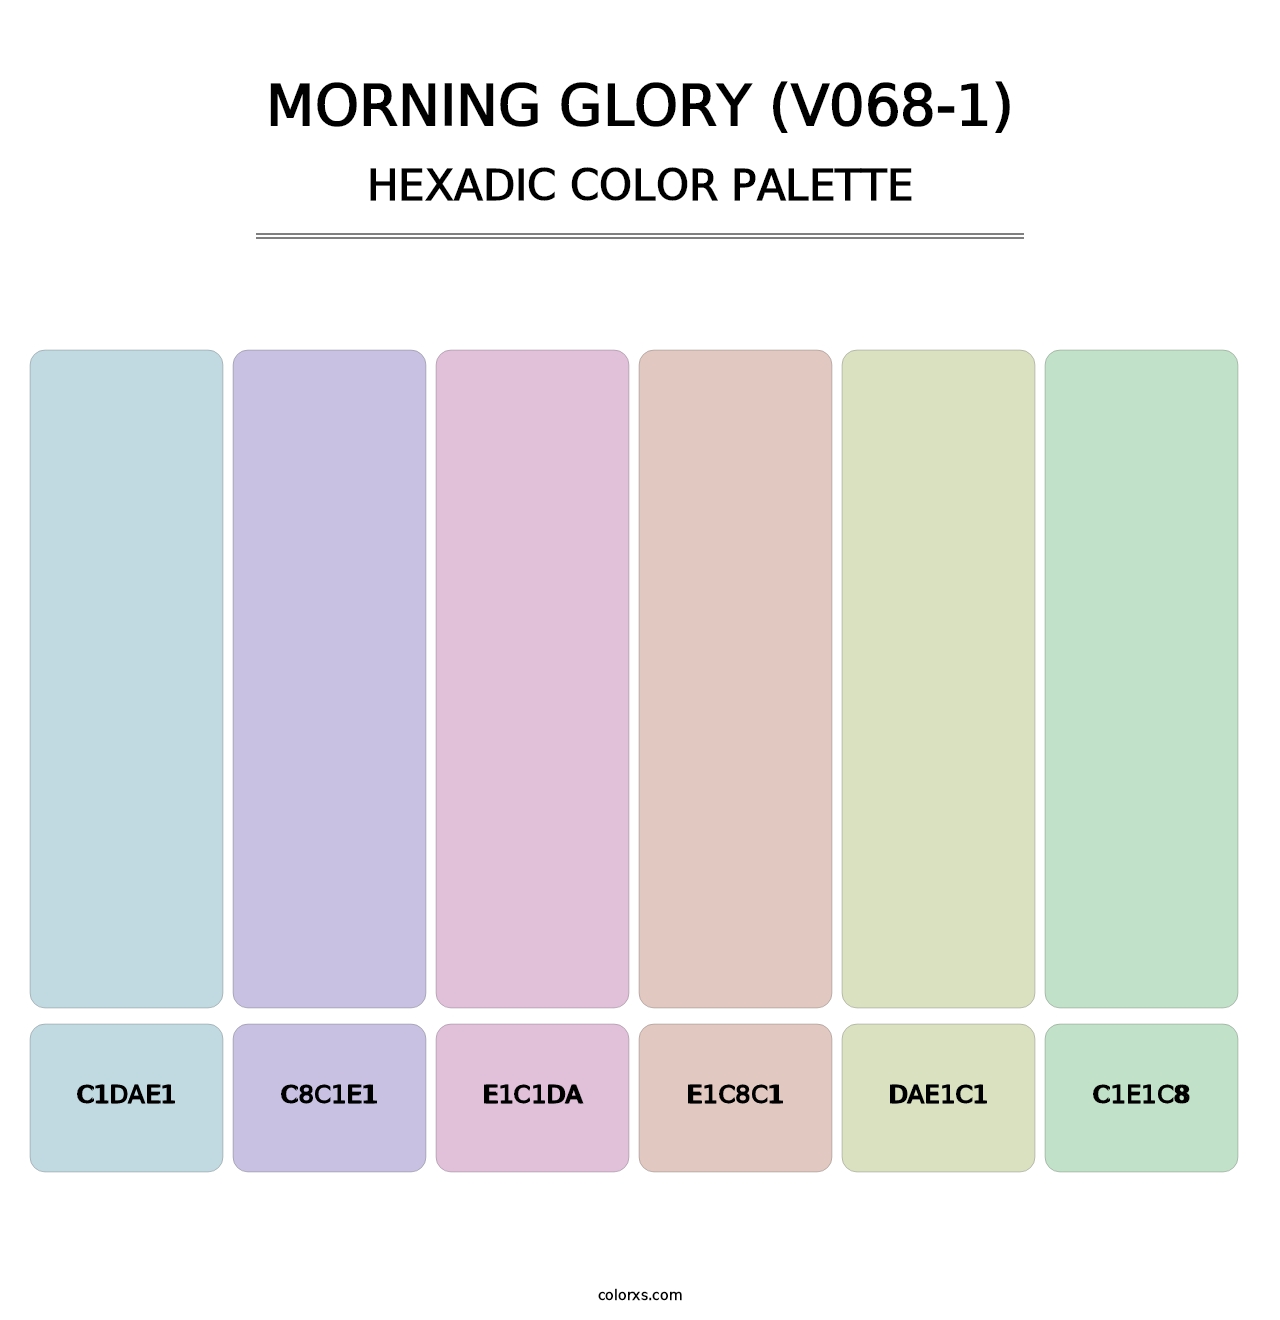 Morning Glory (V068-1) - Hexadic Color Palette